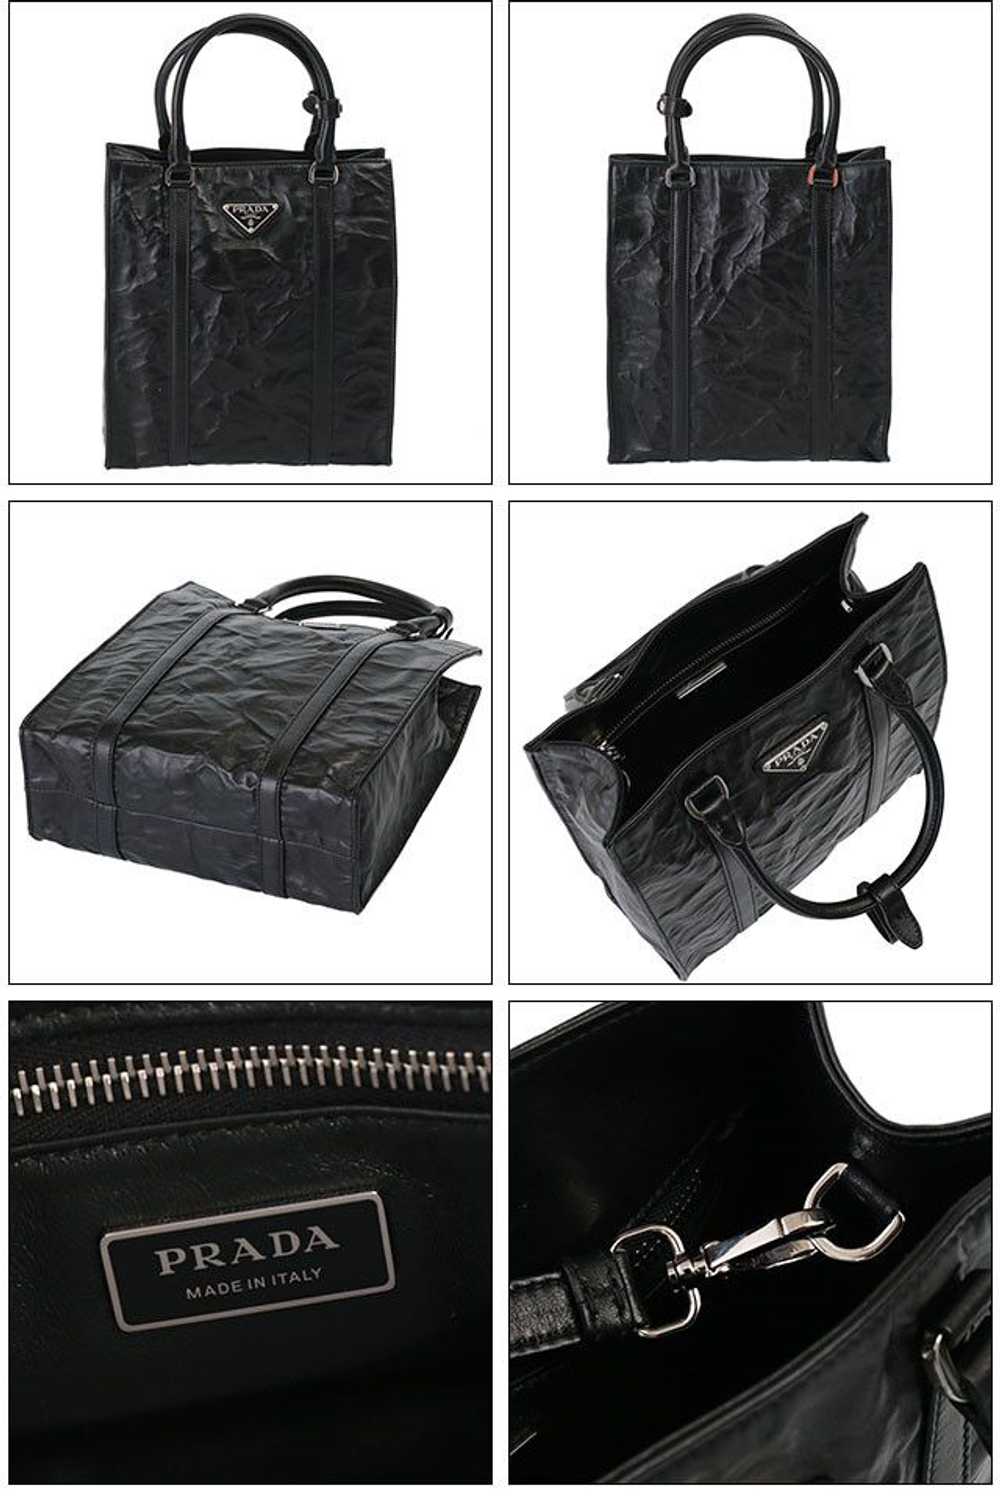 Prada Prada Tote Bag Leather Shoulder Bag Black - image 2